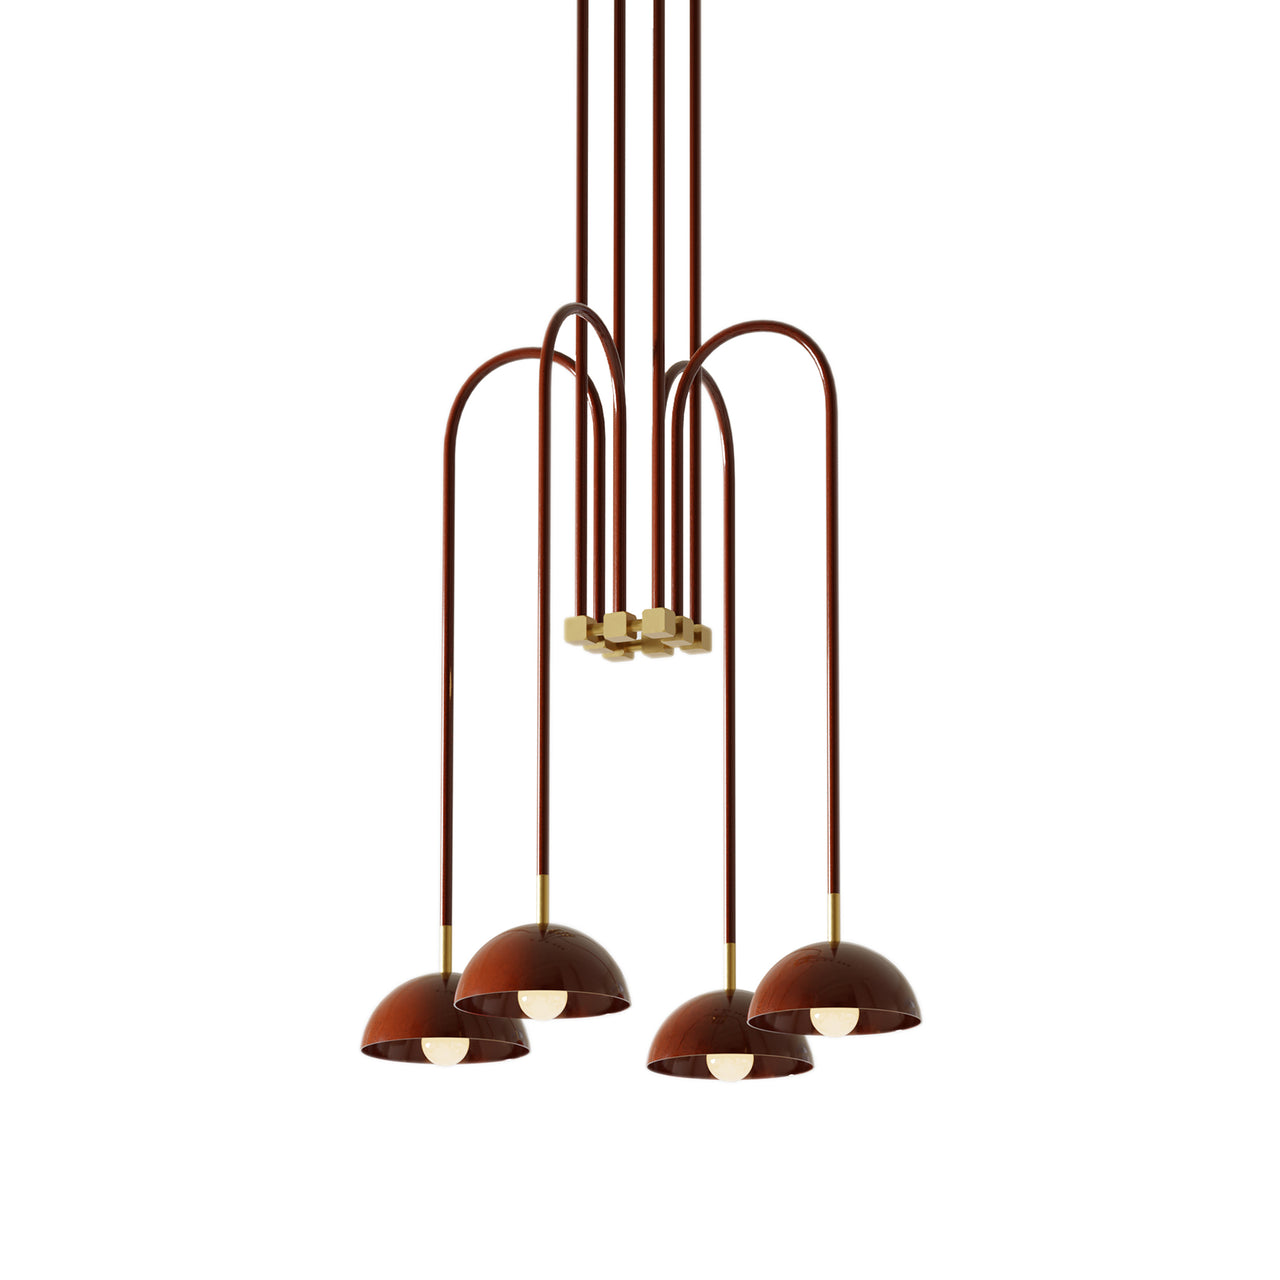 Beaubien Atelier 03 Suspension Lamp: Glossy Oxblood